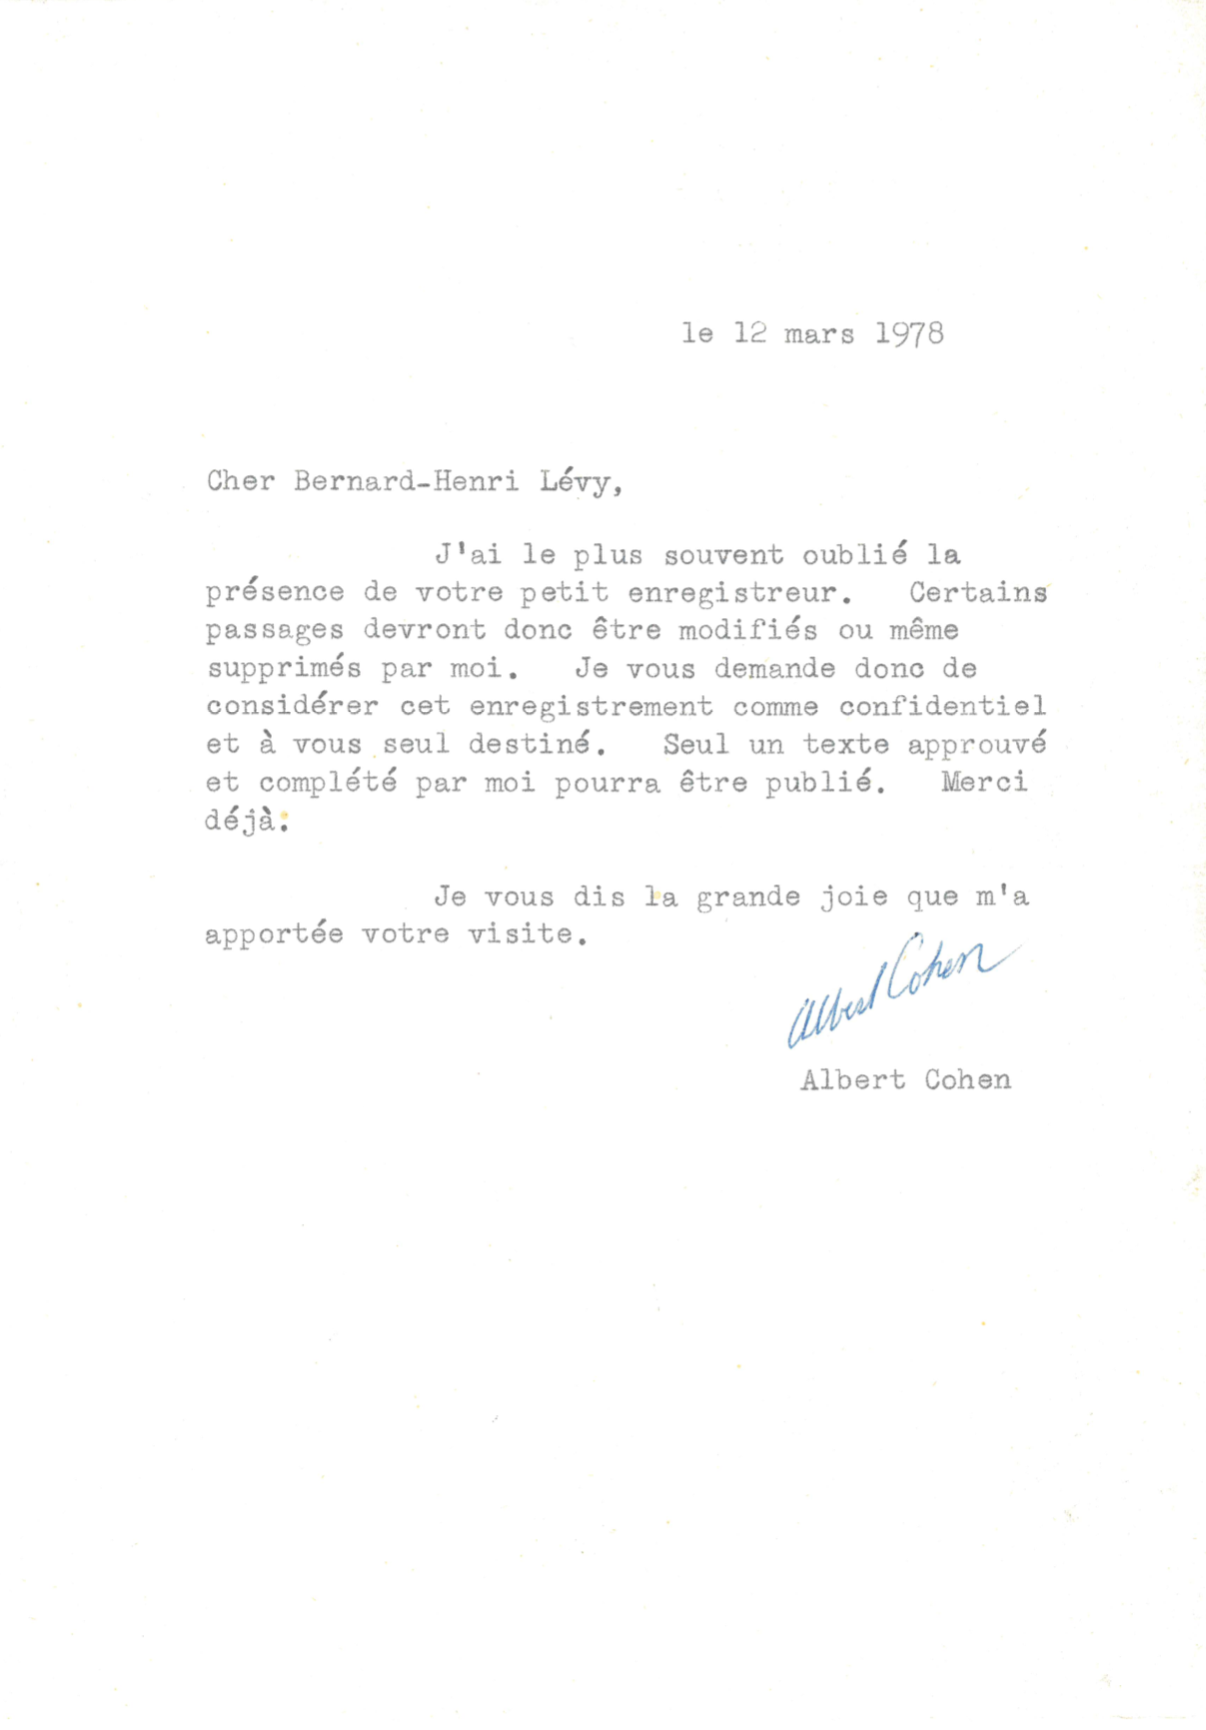 Lettre tapuscrite d'Albert Cohen à Bernard-Henri Lévy, datée du 12 mars 1978.